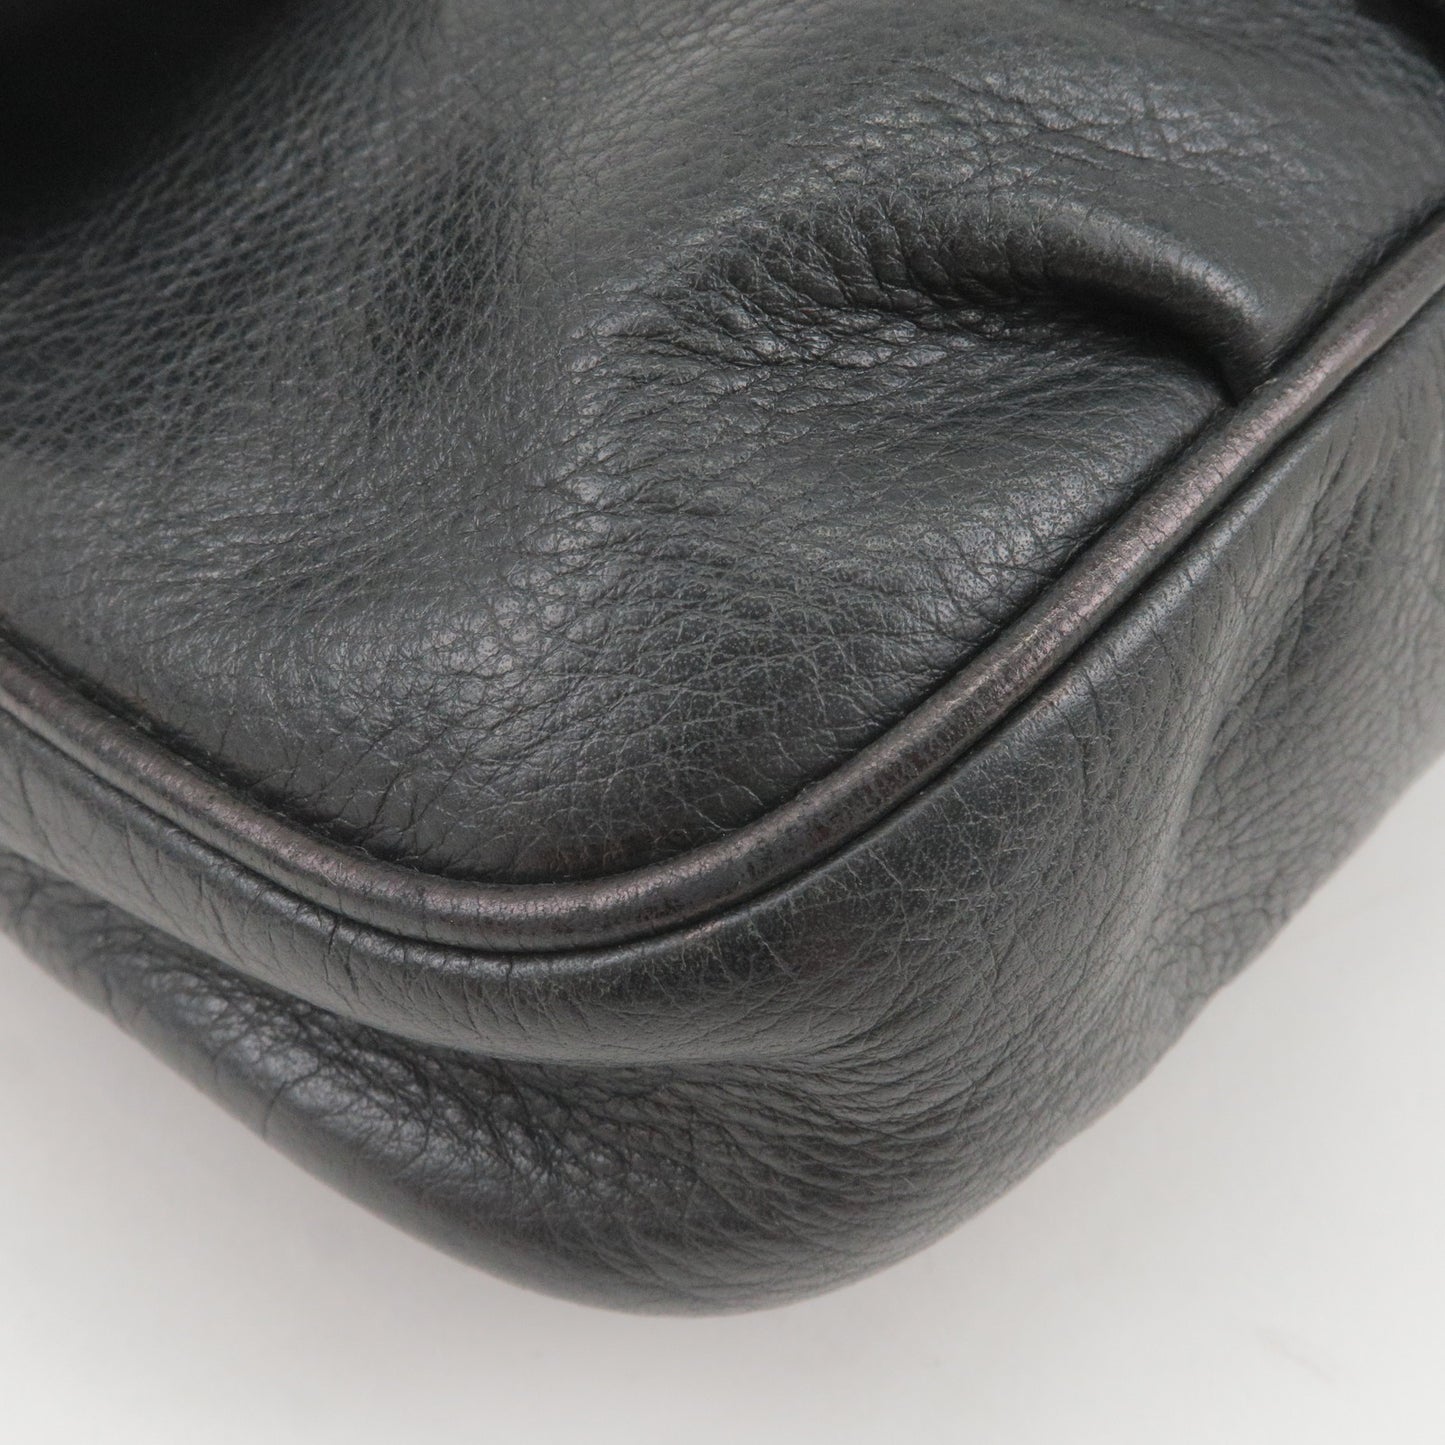 FENDI Leather Chain Shoulder Bag Purse Pouch Black 8M0276